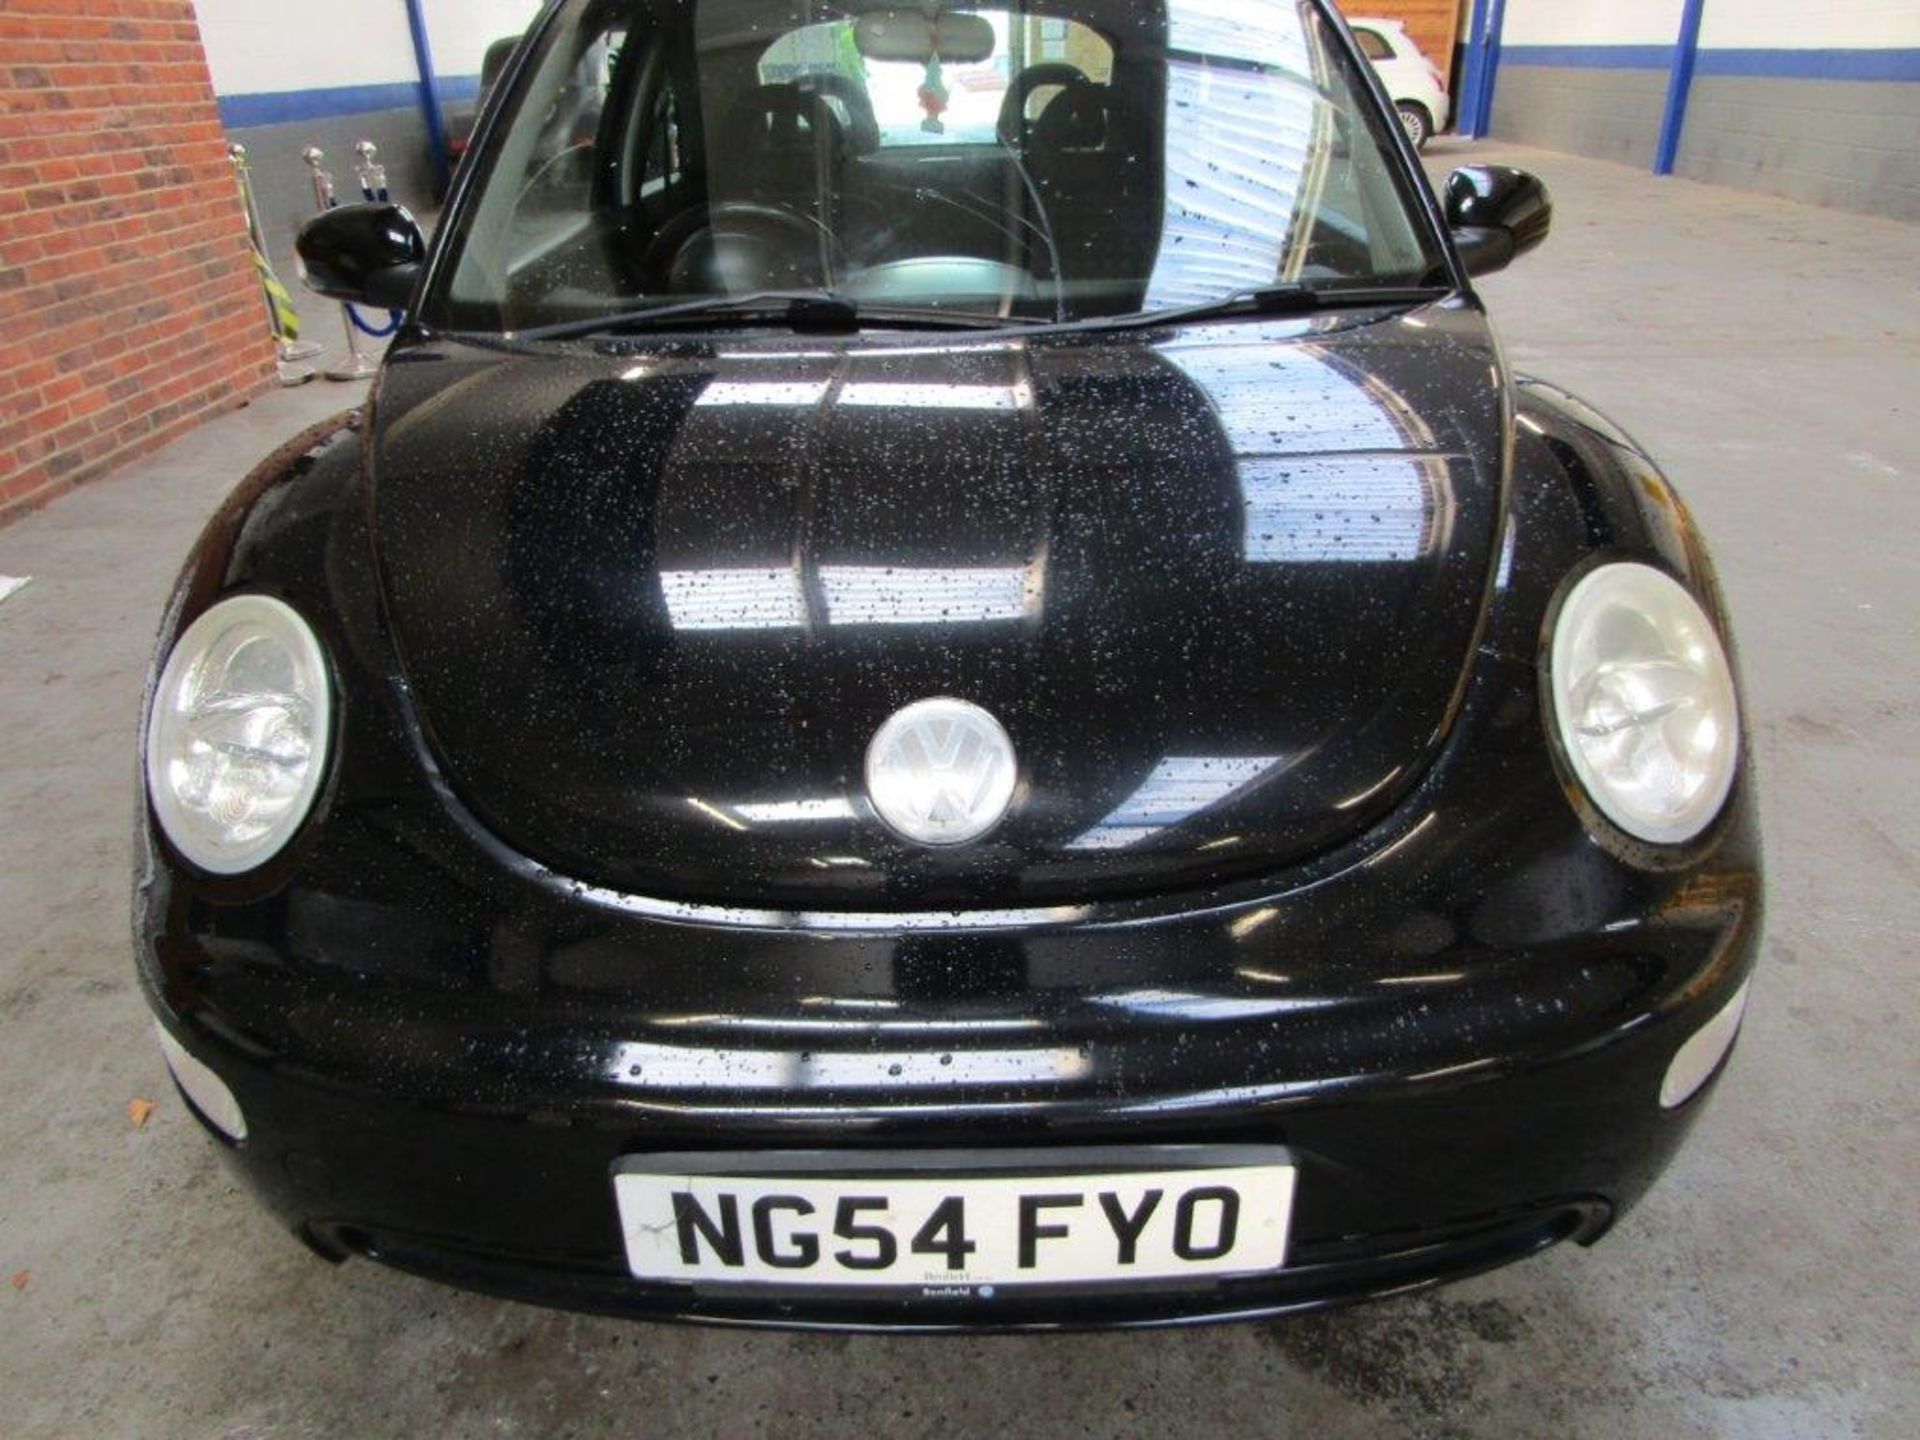 54 04 VW Beetle - Image 5 of 21